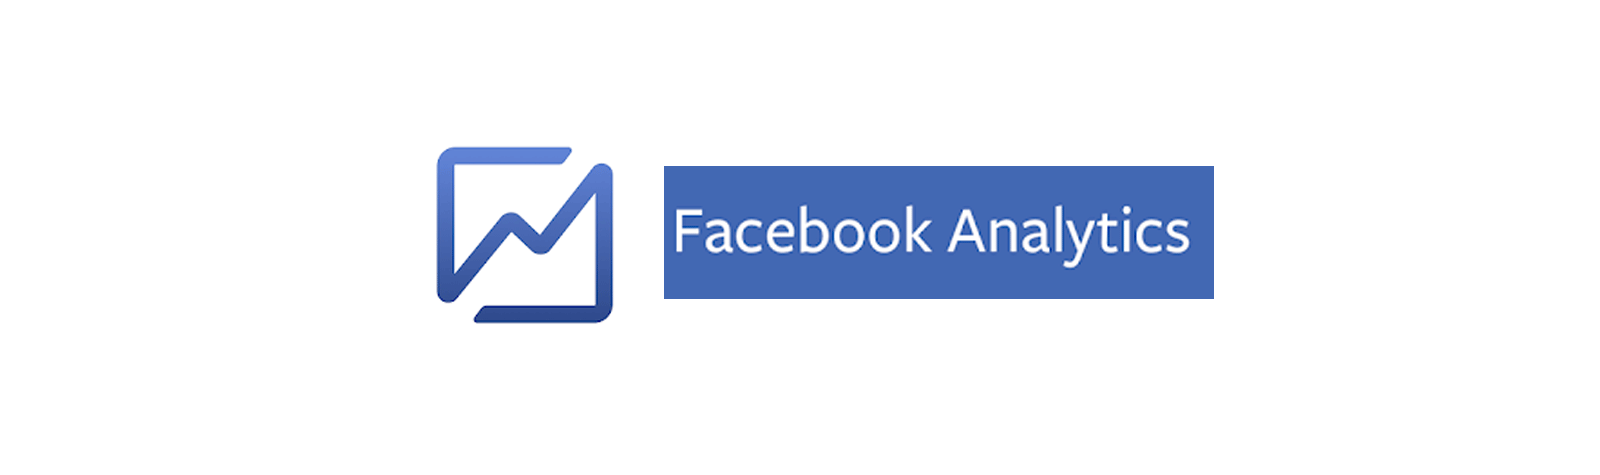 Facebook Analytics chiude